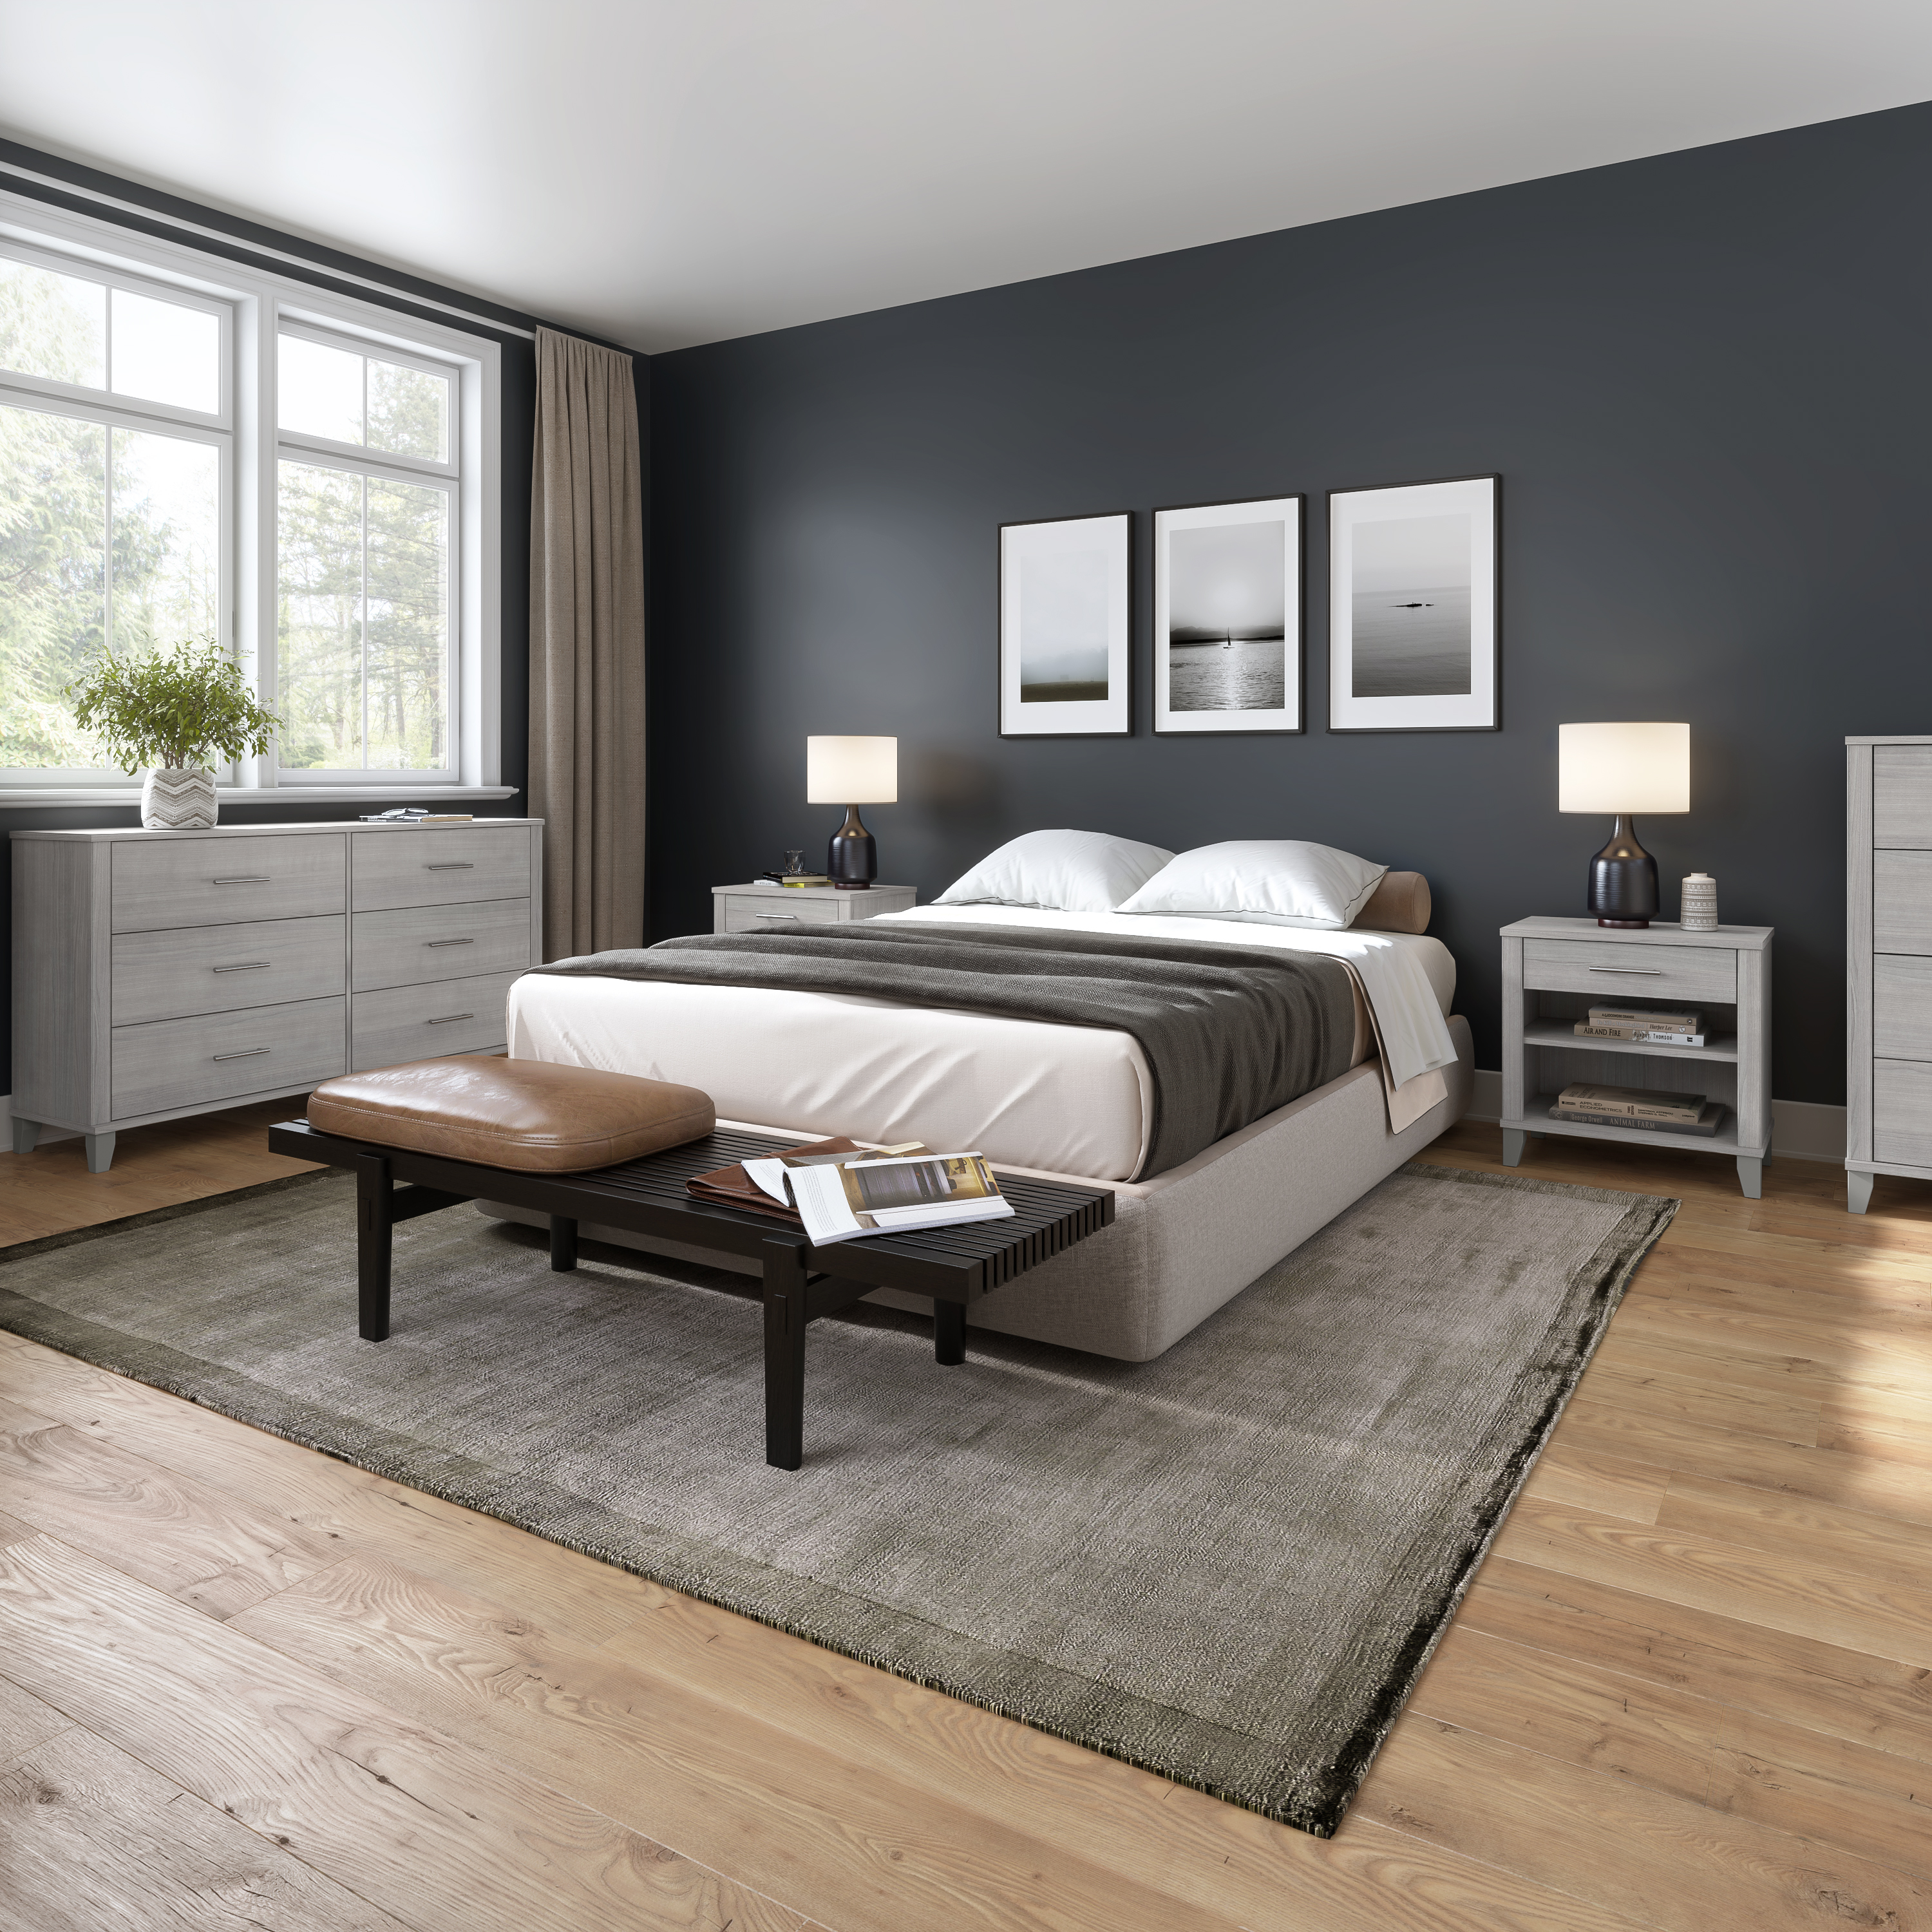 Shop Bush Furniture Somerset 6 Drawer Dresser and Nightstand Set 09 SET035PG #color_platinum gray